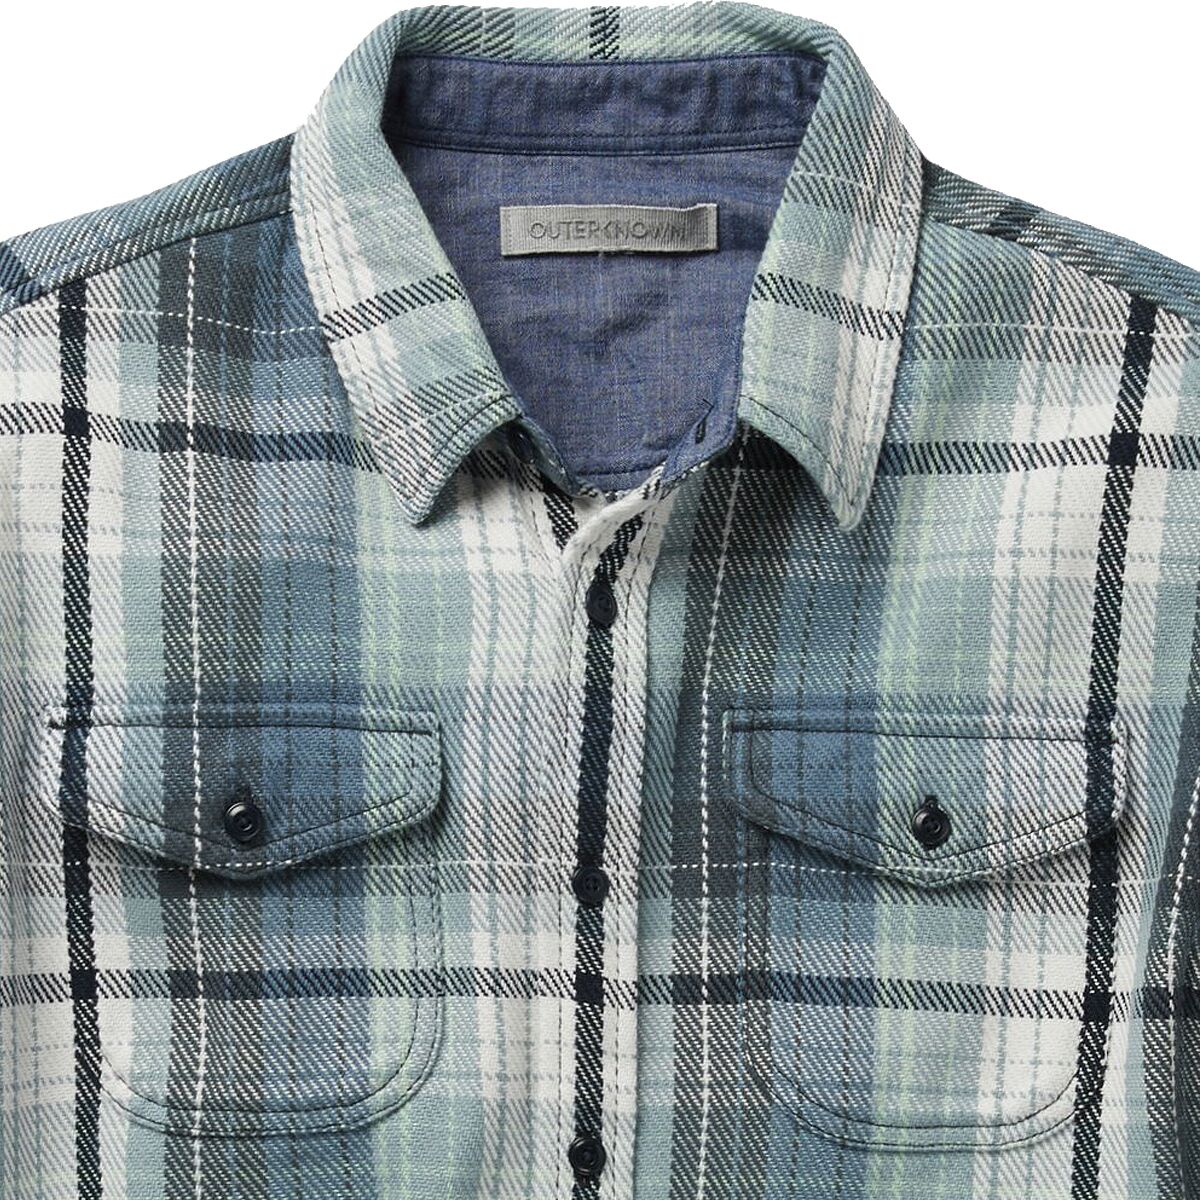 Outerknown Blanket Shirt - Men's | eBay